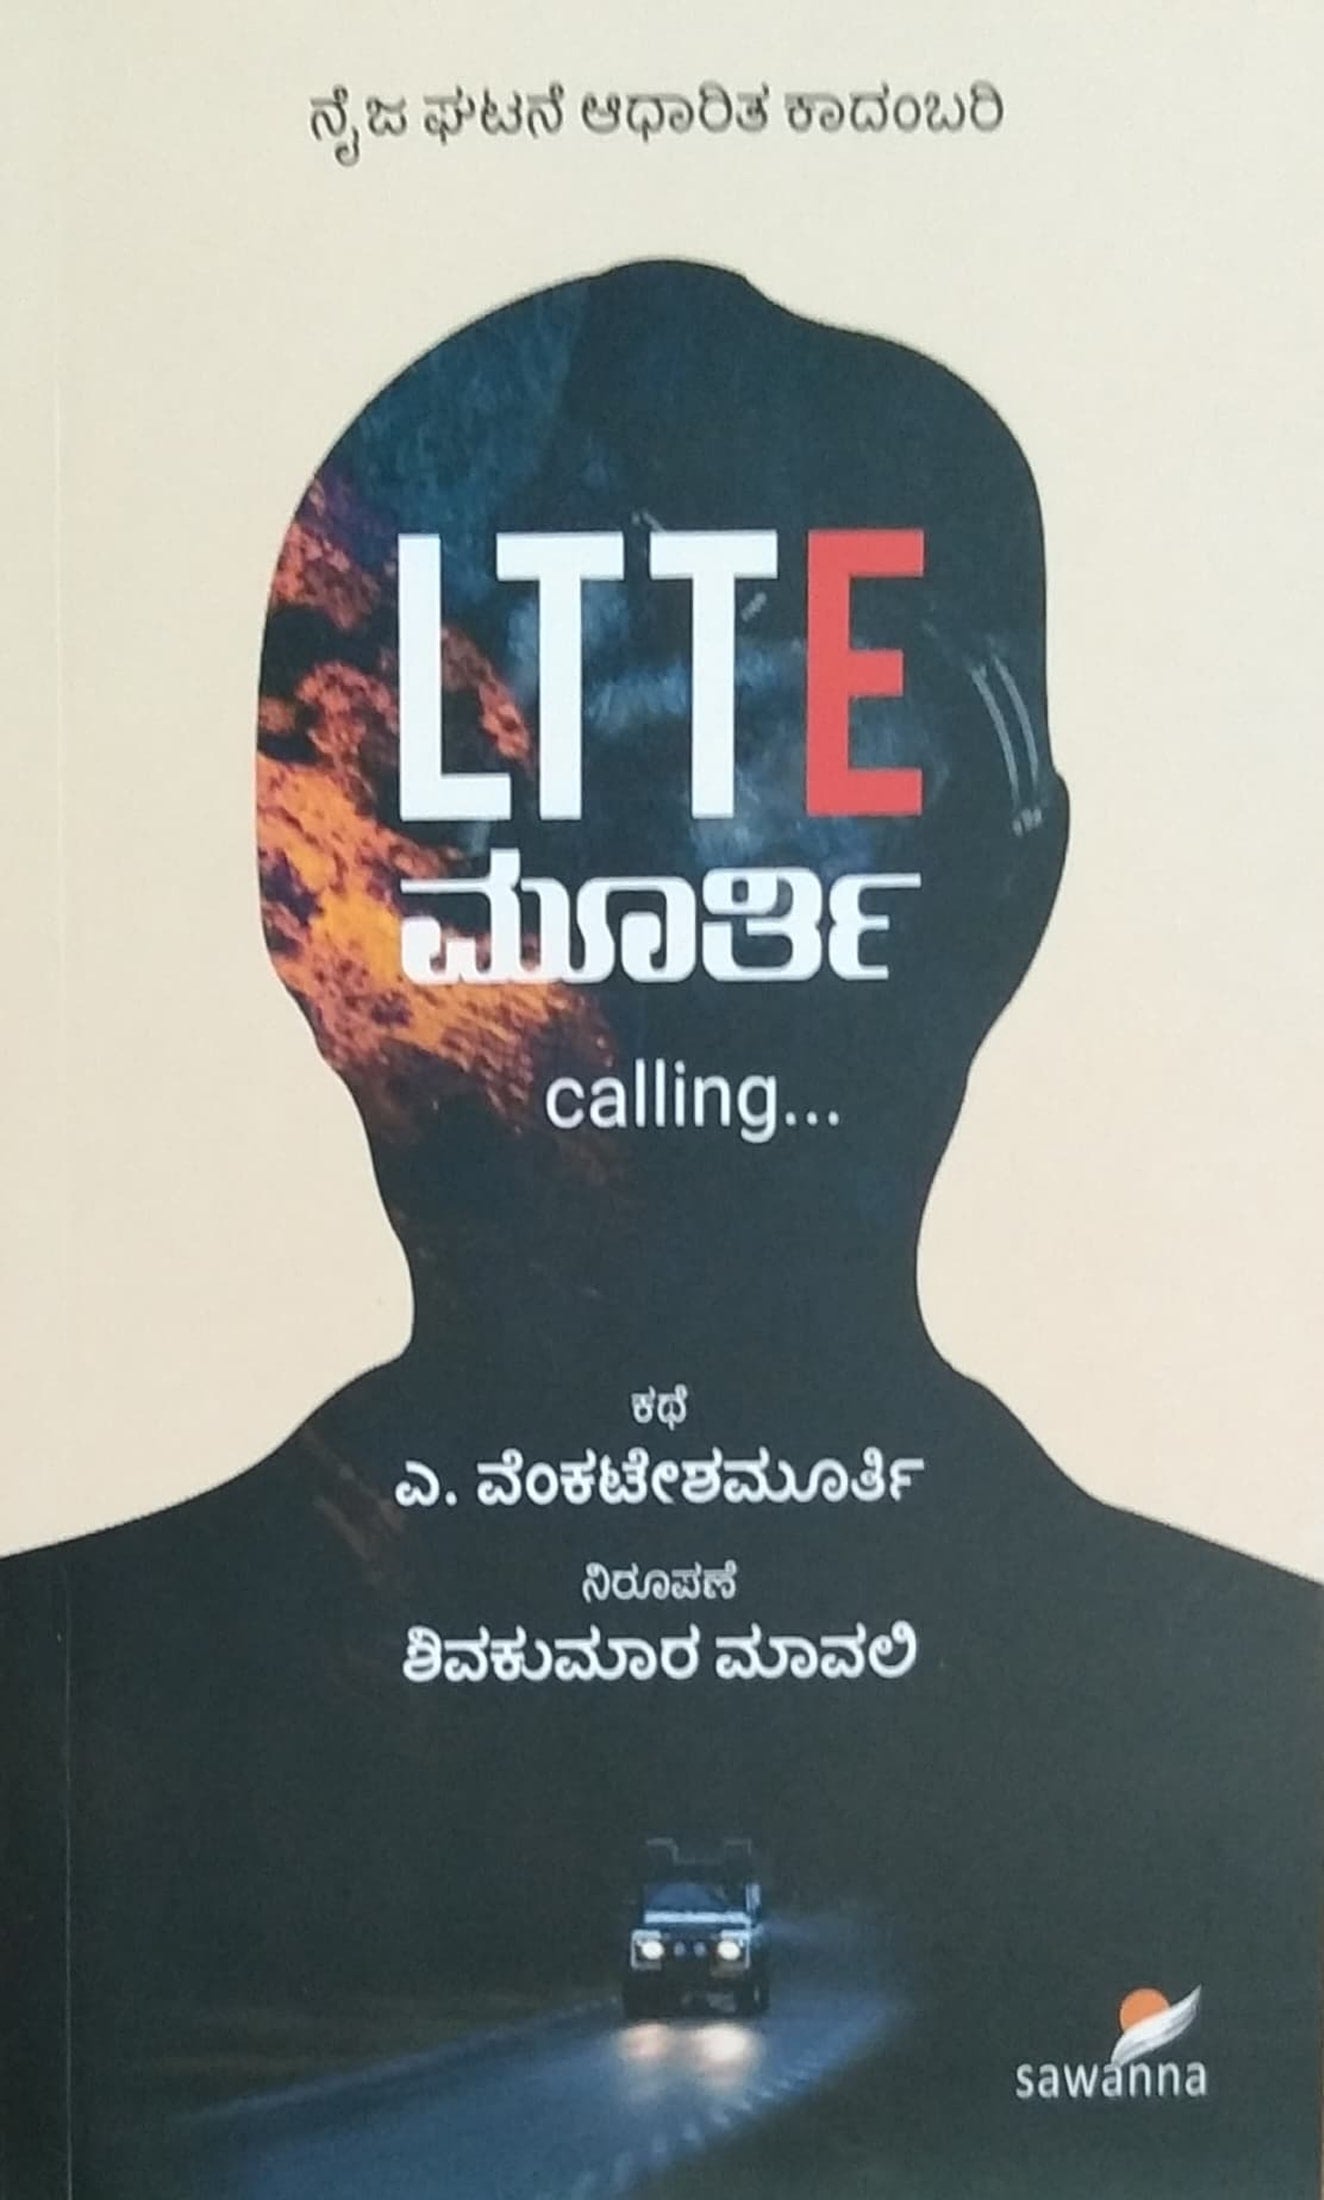 LTTE ಮೂರ್ತಿ calling...